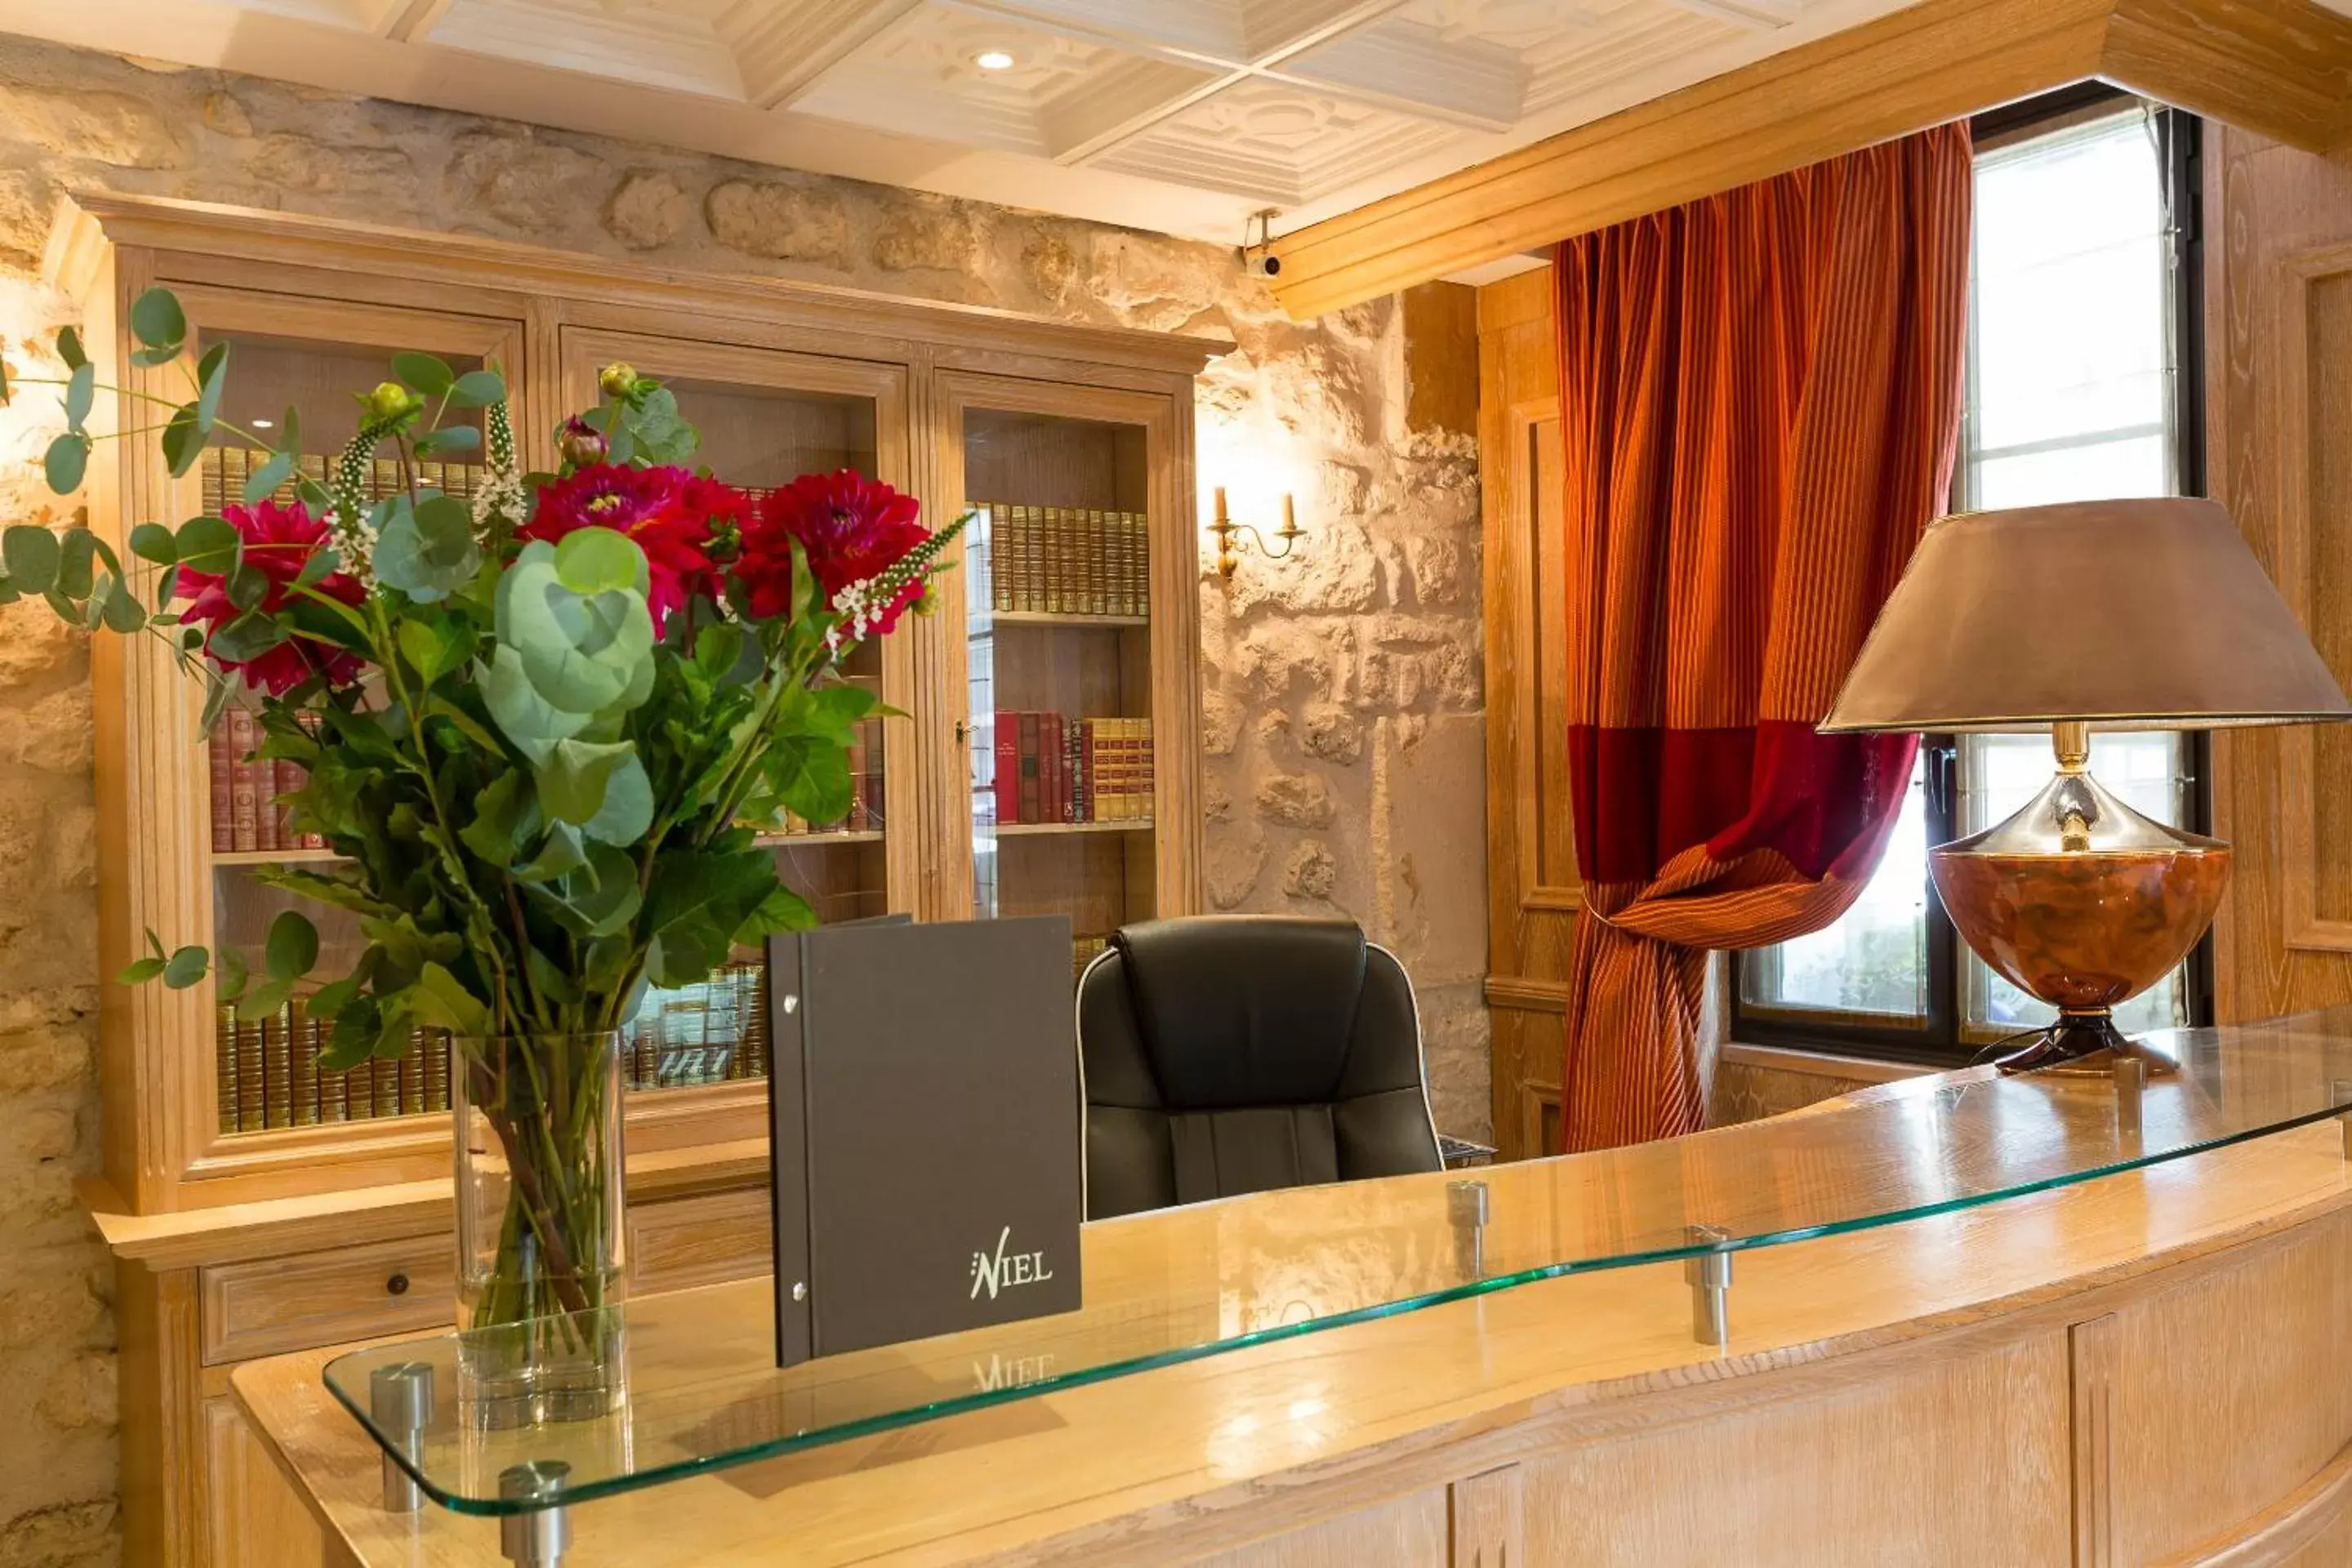 Lobby or reception, Lobby/Reception in Elysees Niel Hotel